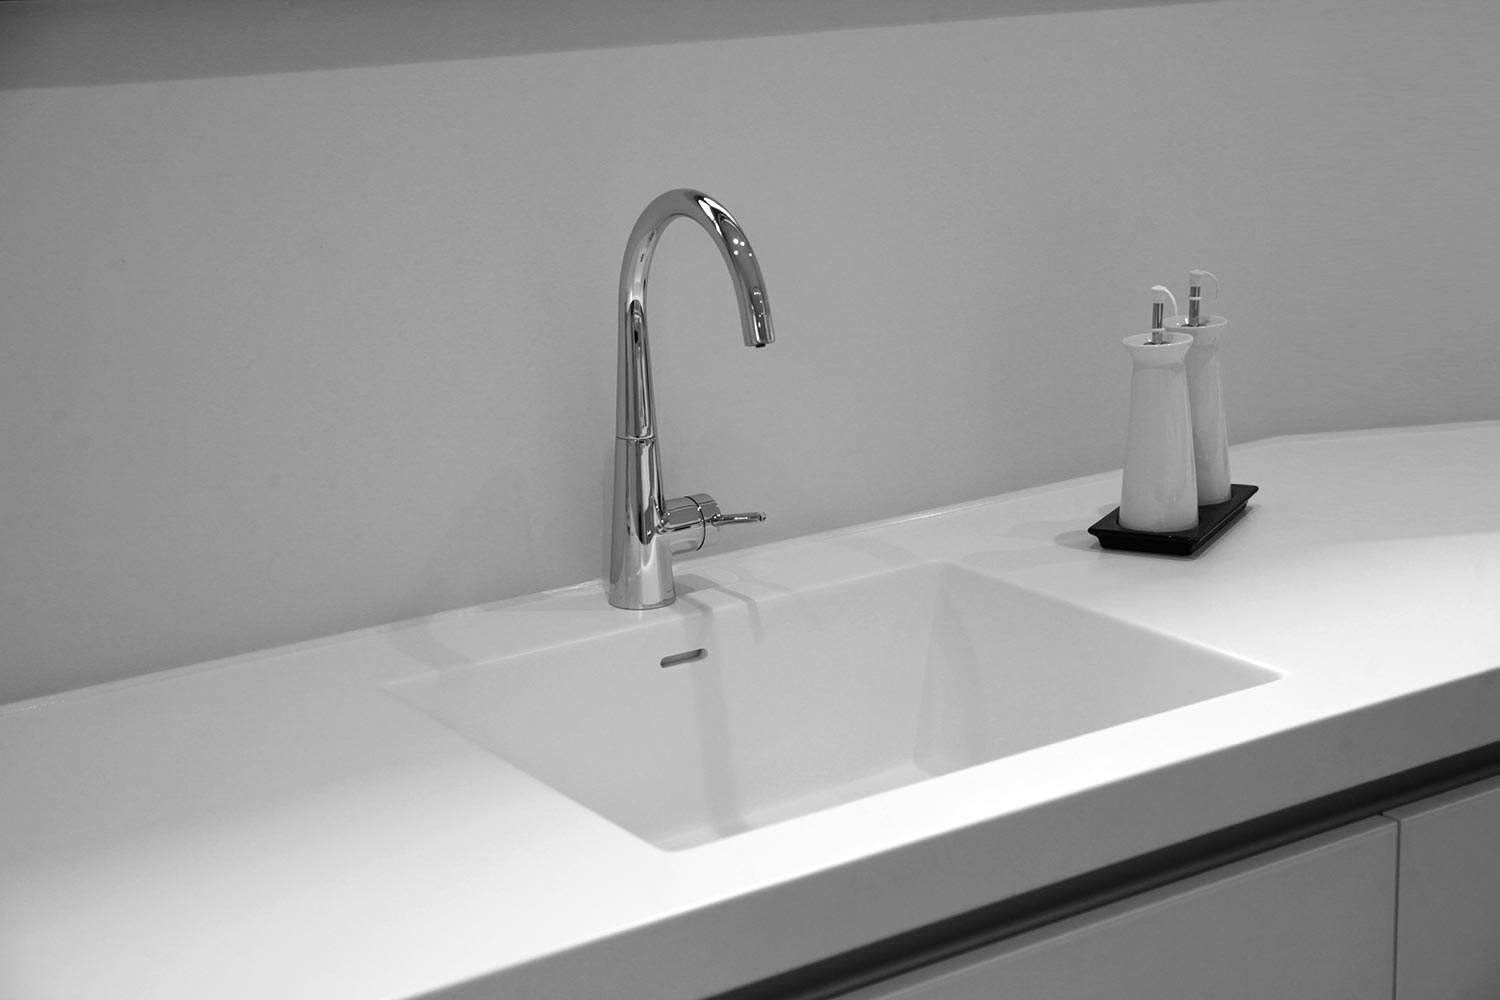 Black and white kitchen sink